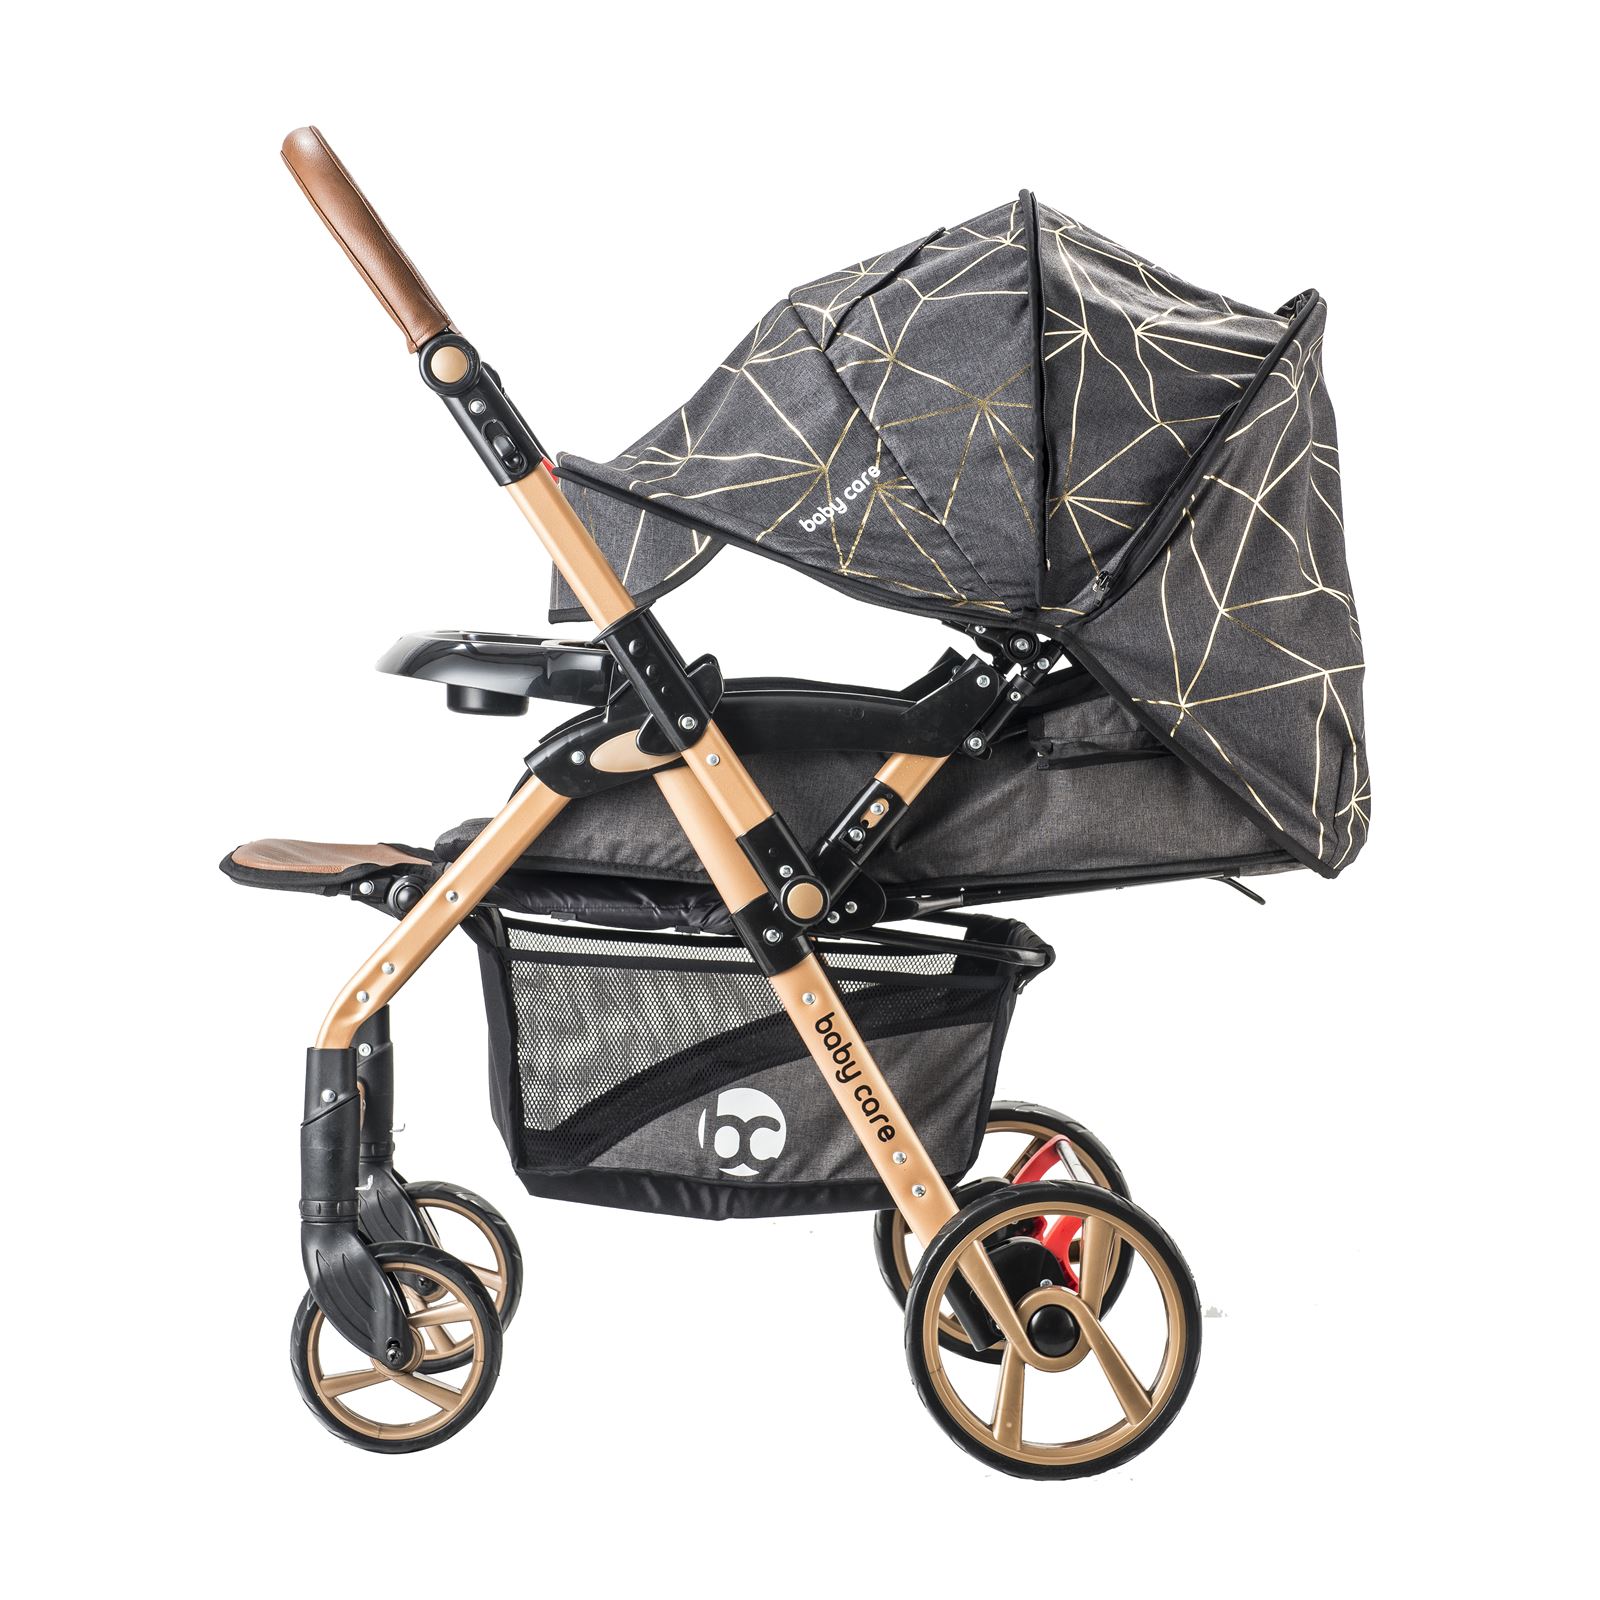 Babycare Maxi Çift Yönlü Bebek Arabası Siyah